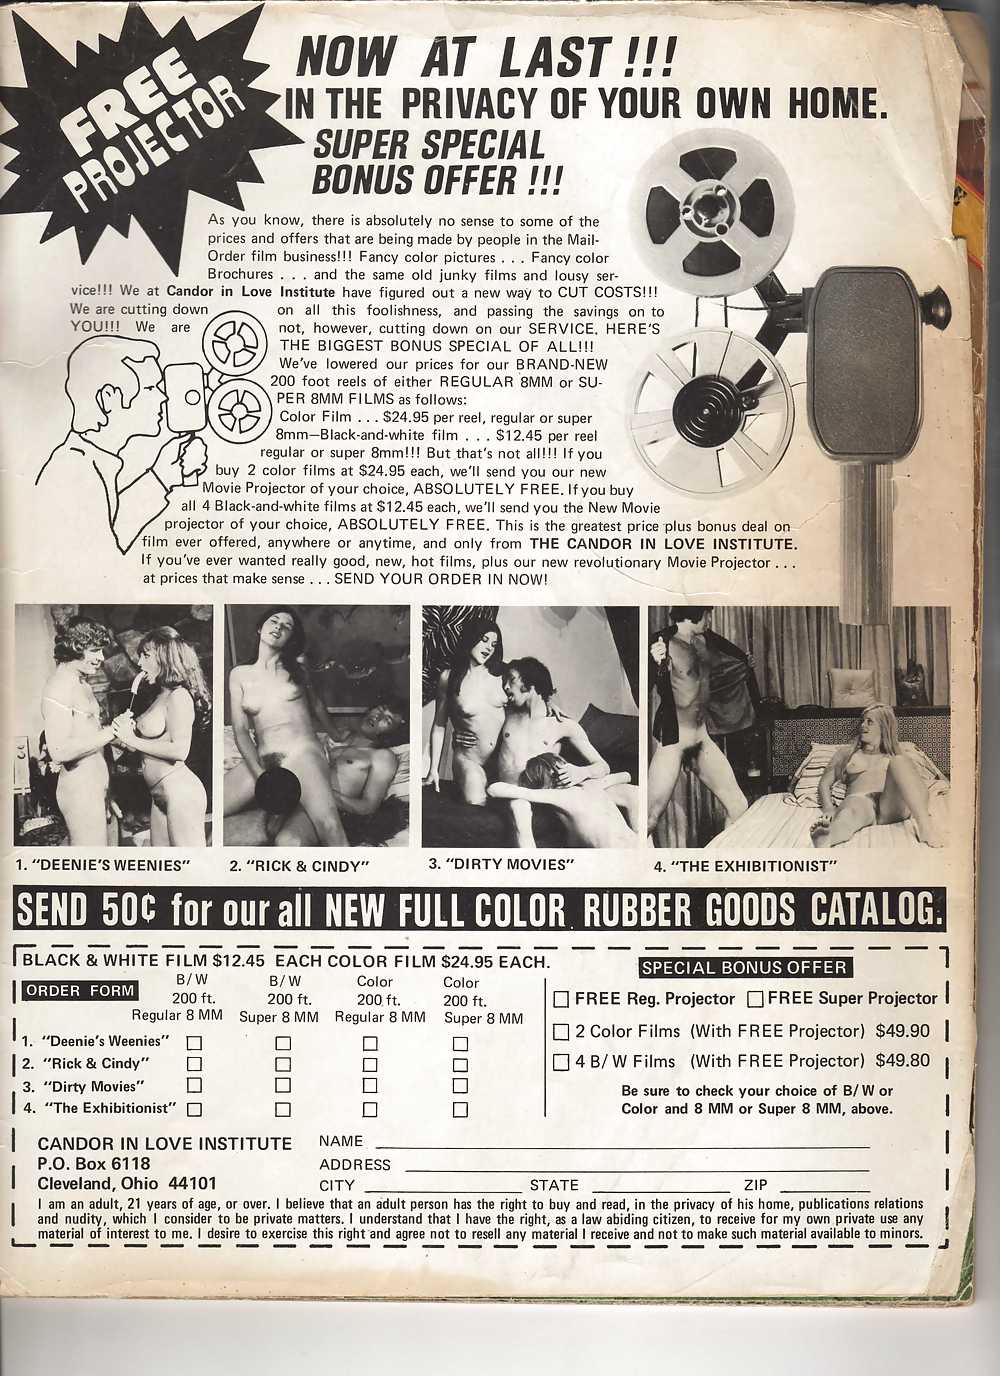 ヴィンテージ雑誌 teeny floppers vol 06 no 01 - 1973
 #2155546